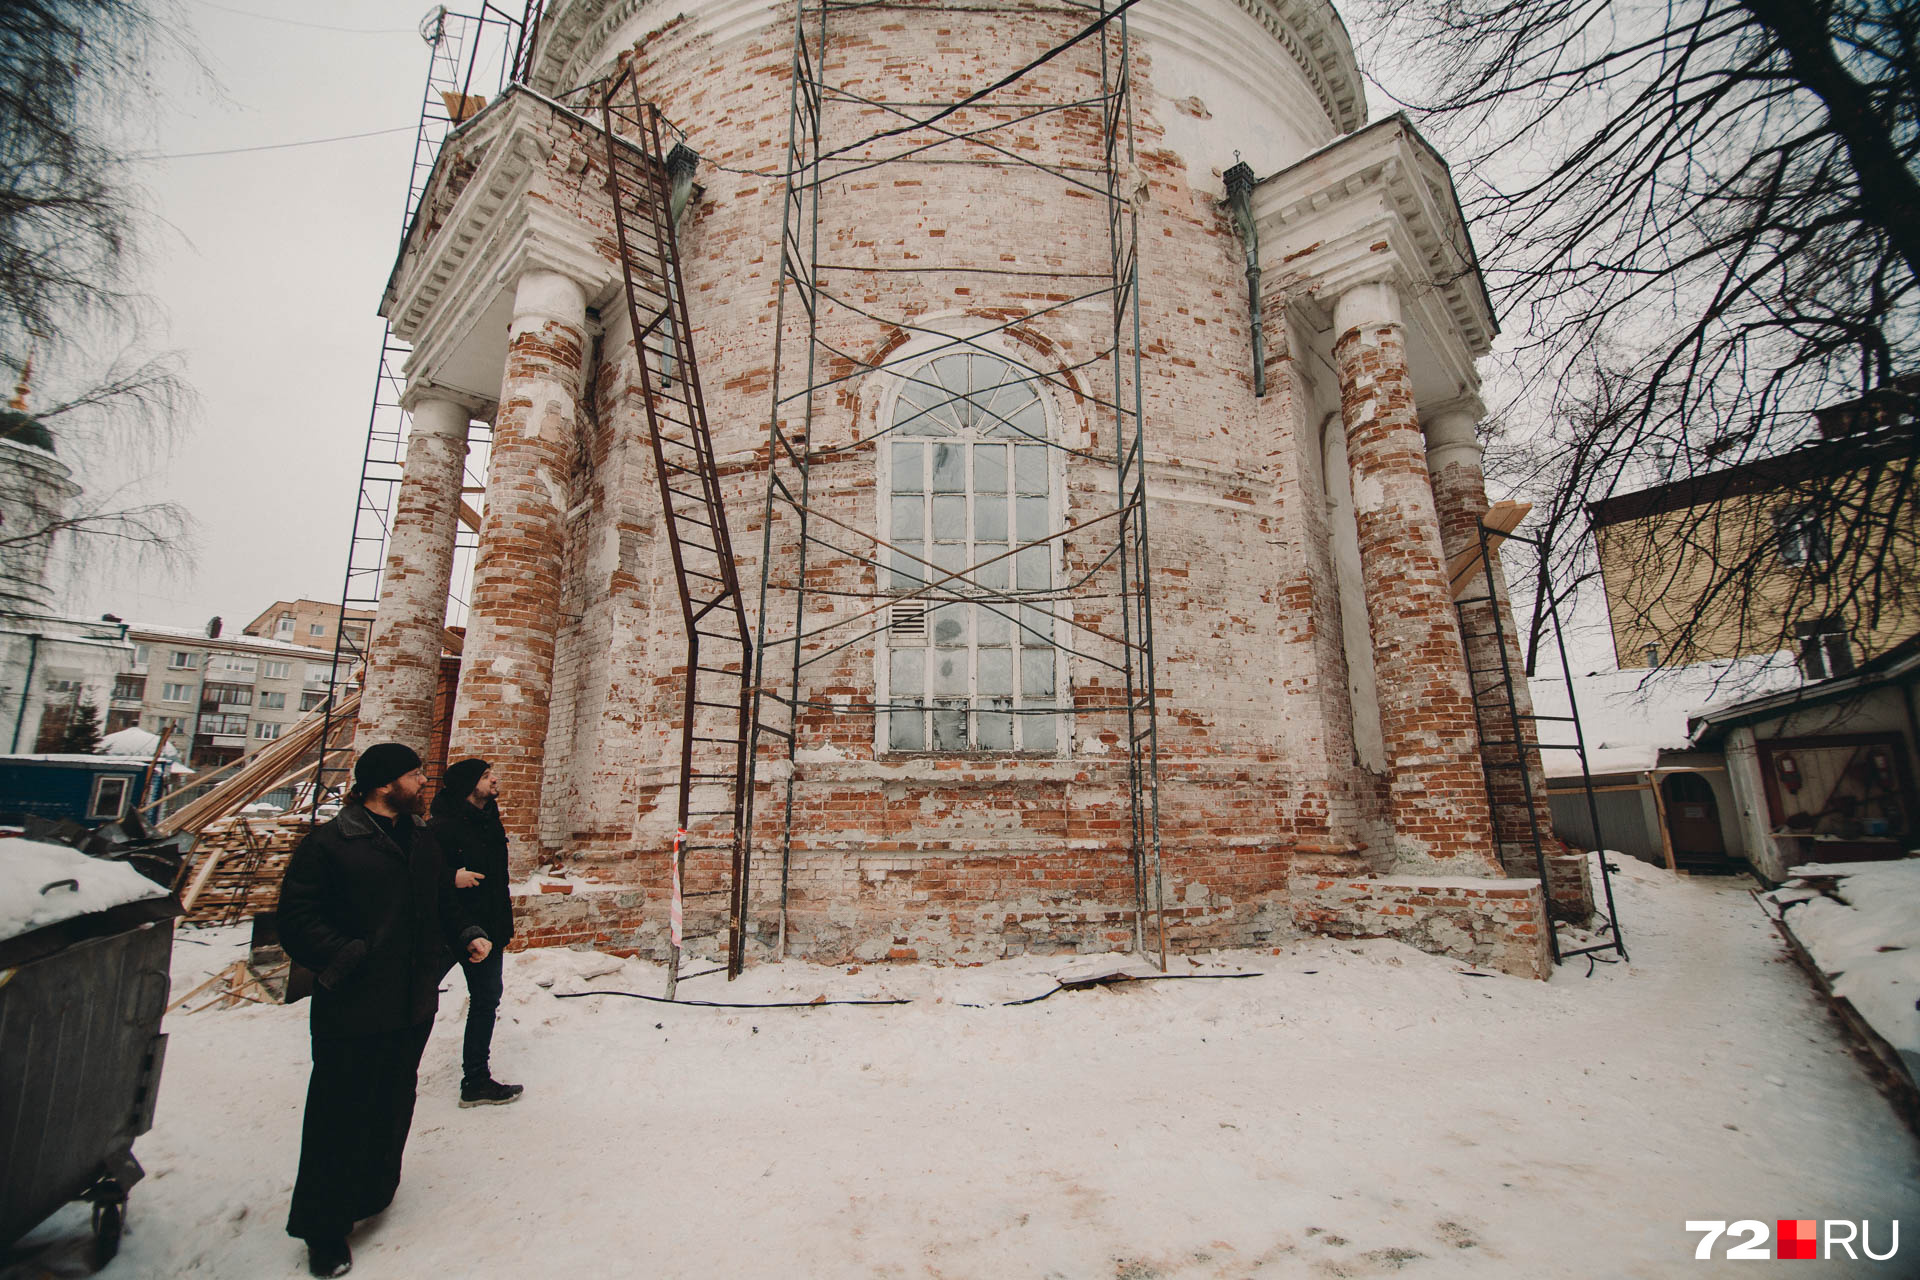 Уникальность церкви в том, что она круглая. В Тюмени таких больше нет. Да и во всей России немного встретишь